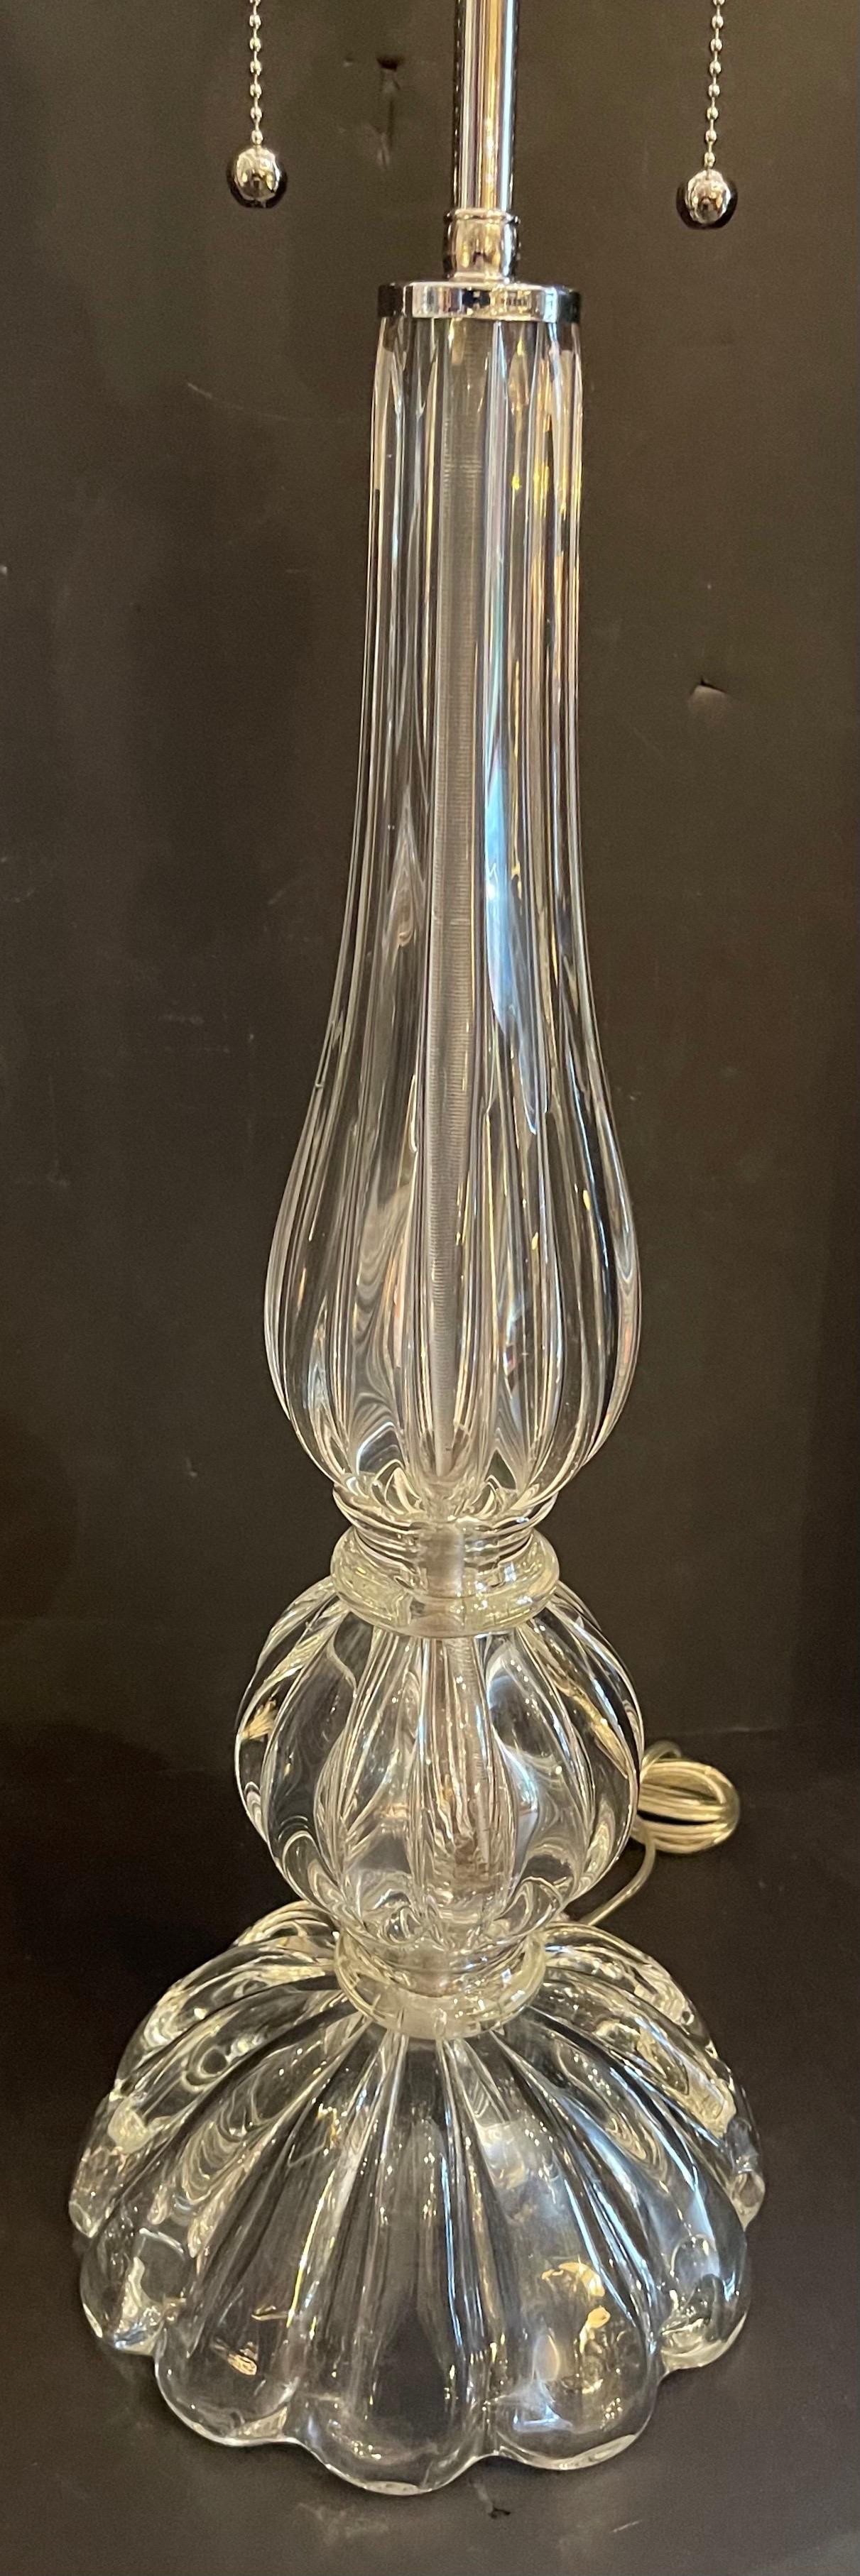 Magnifique paire de lampes en verre cannelé clair vénitien de style Murano Seguso, dans le style Art Déco, avec de nouveaux raccords et fils en nickel poli.
Acheté à Lorin Marsh.